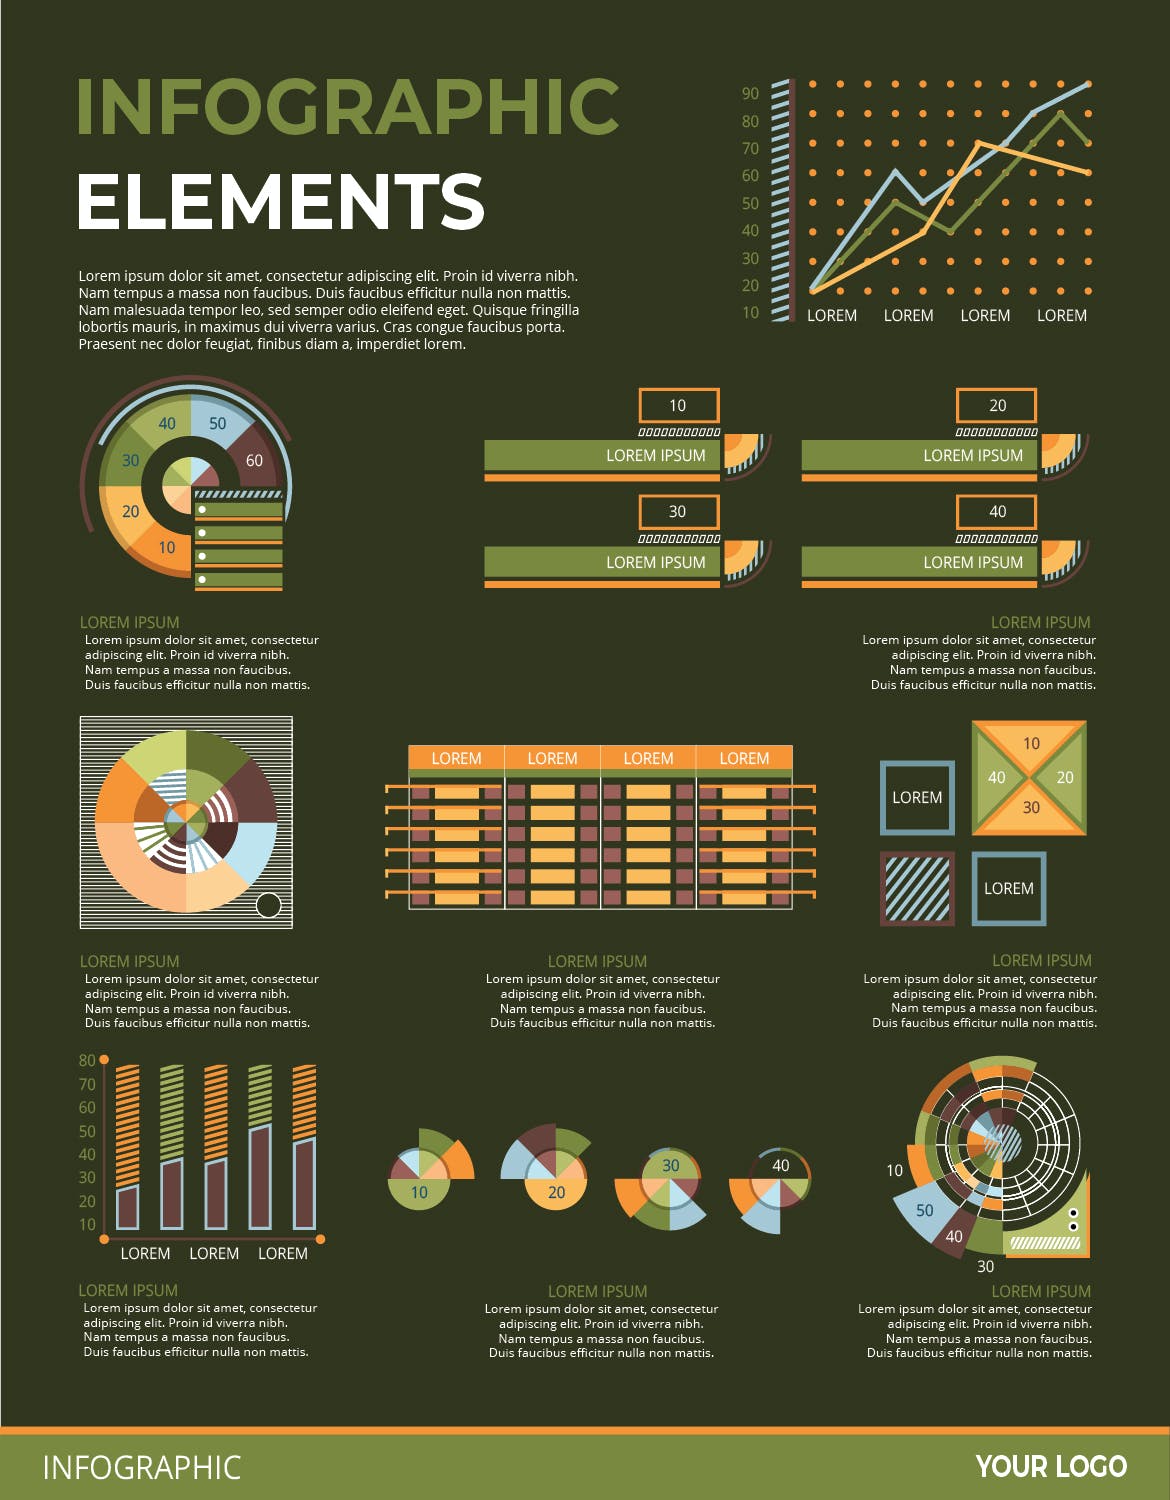 可视化数据信息图表元素素材v135 Infographic Elements Ver. 135 幻灯图表 第2张